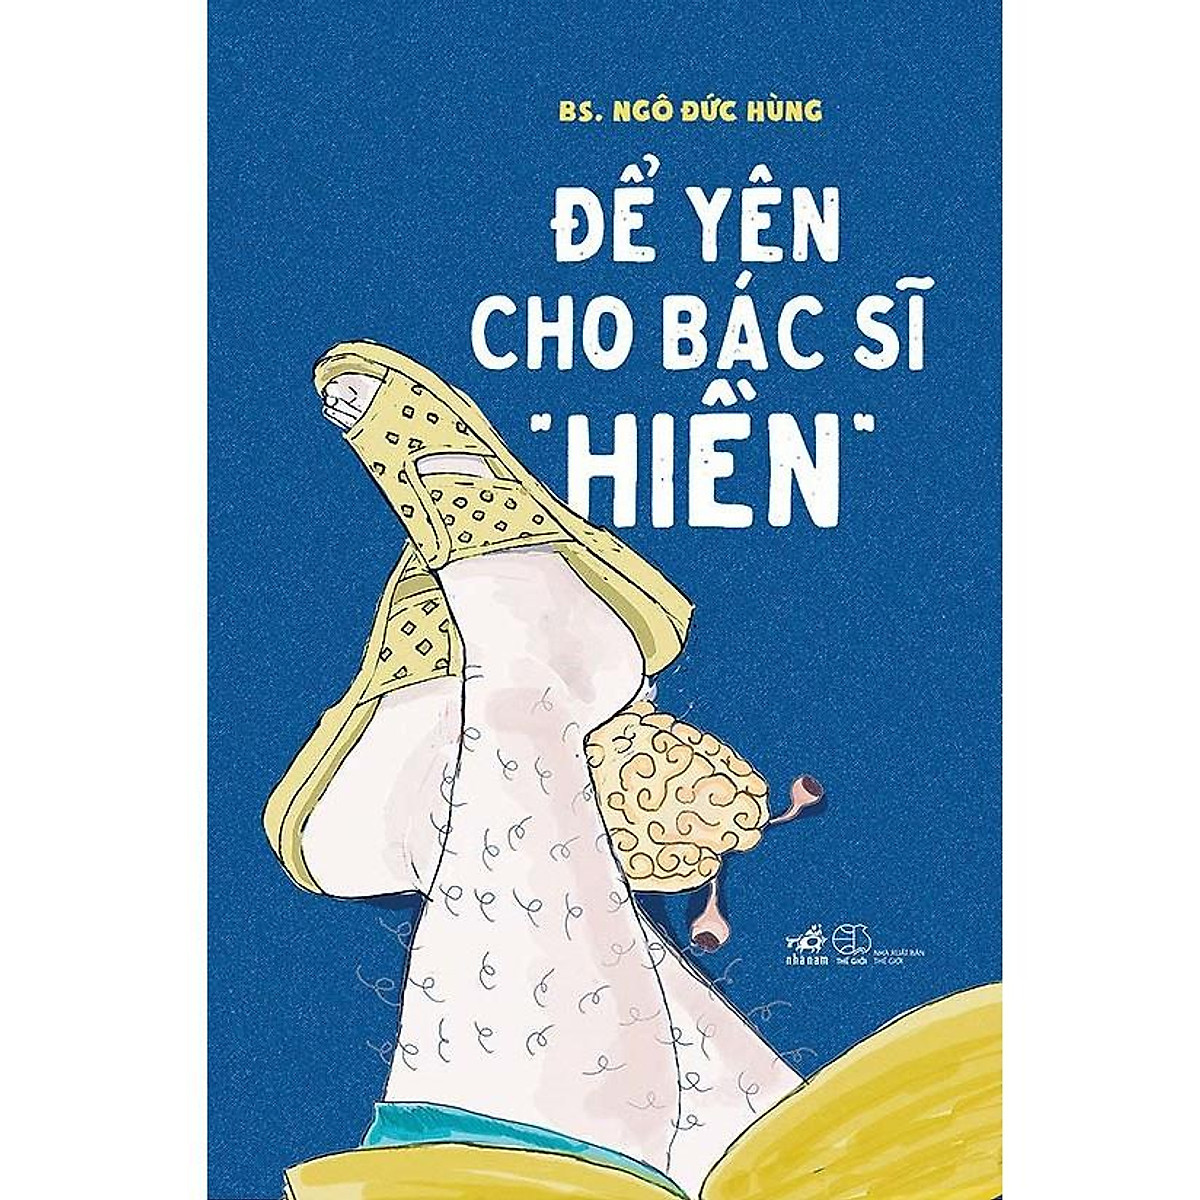 Combo Để yên cho bác sĩ hiền (2 cuốn)